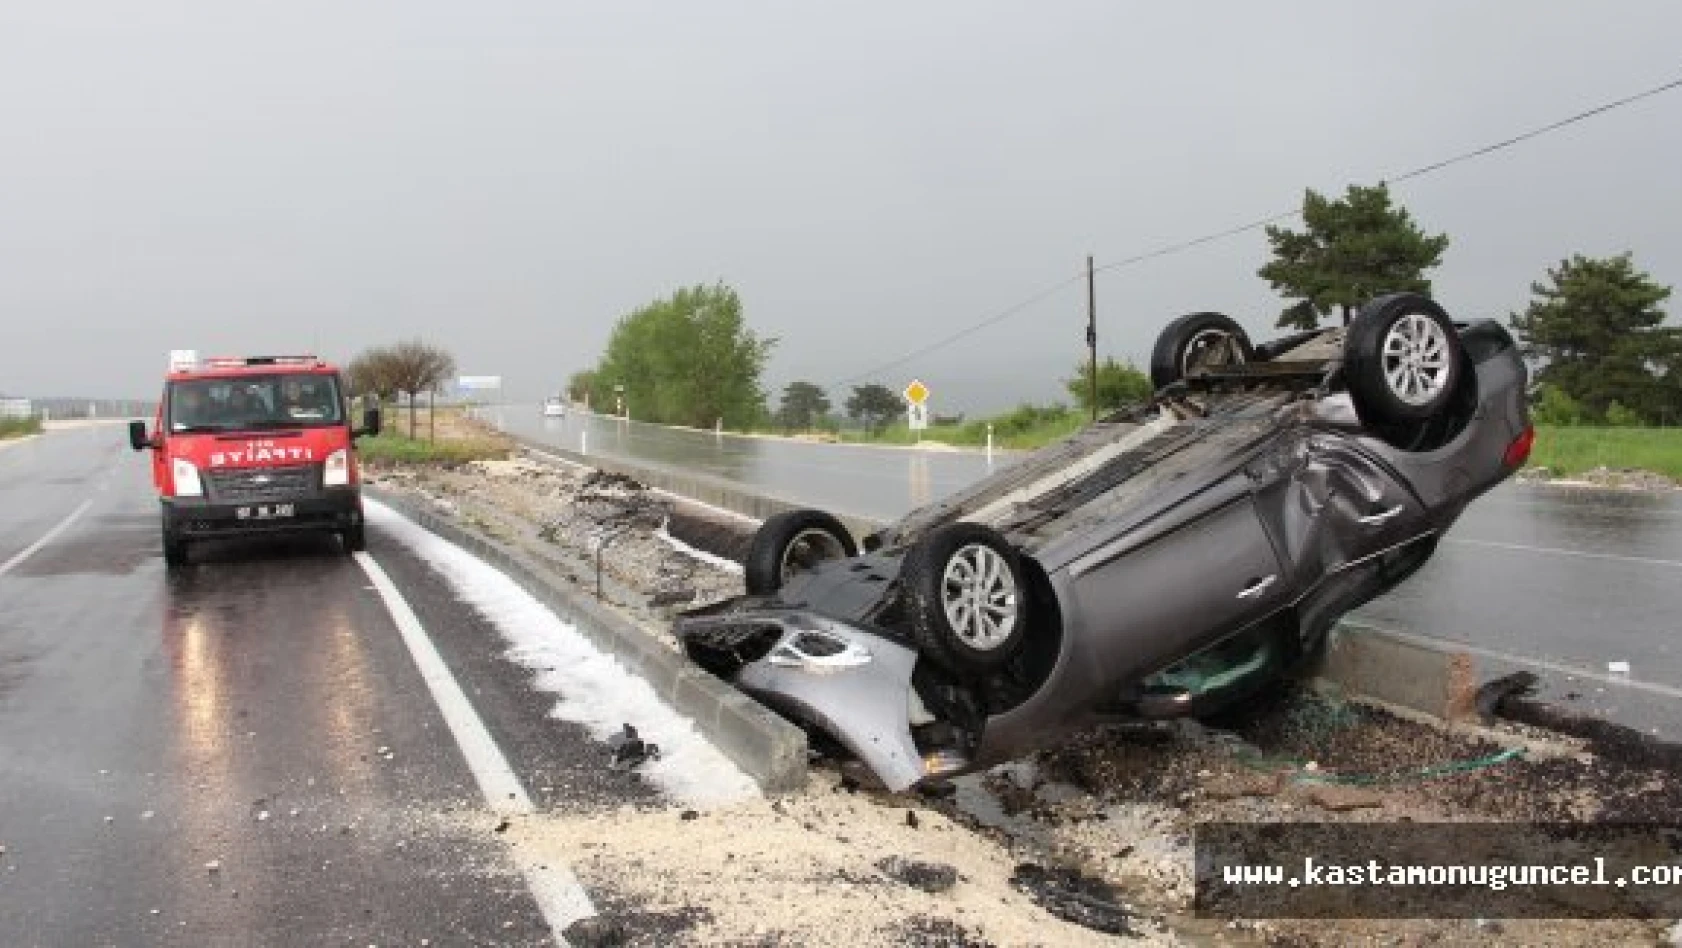 Kastamonu'da Otomobil Takla Attı: 3 Yaralı